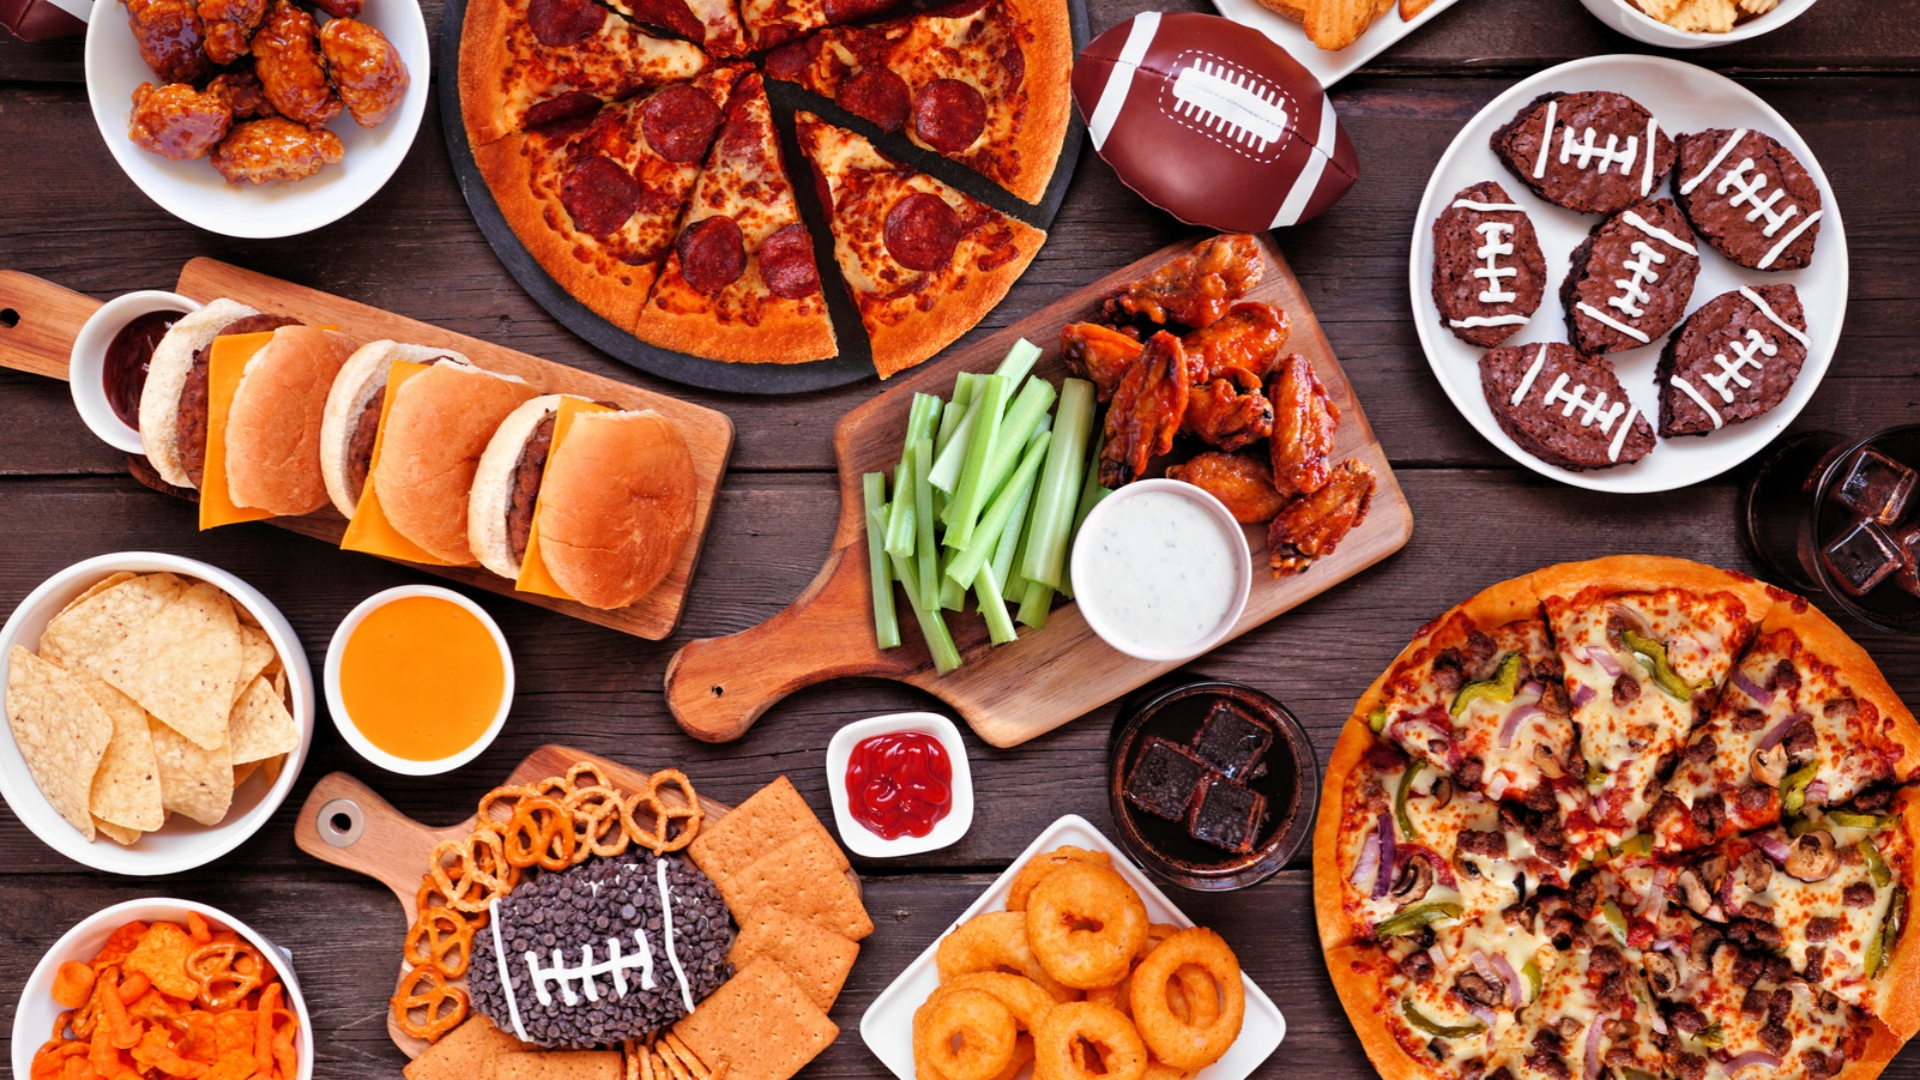 El domingo del Super Bowl es el segundo día del año en el que los estadounidenses consumen la mayor cantidad de comida. El primero es Thanksgiving.